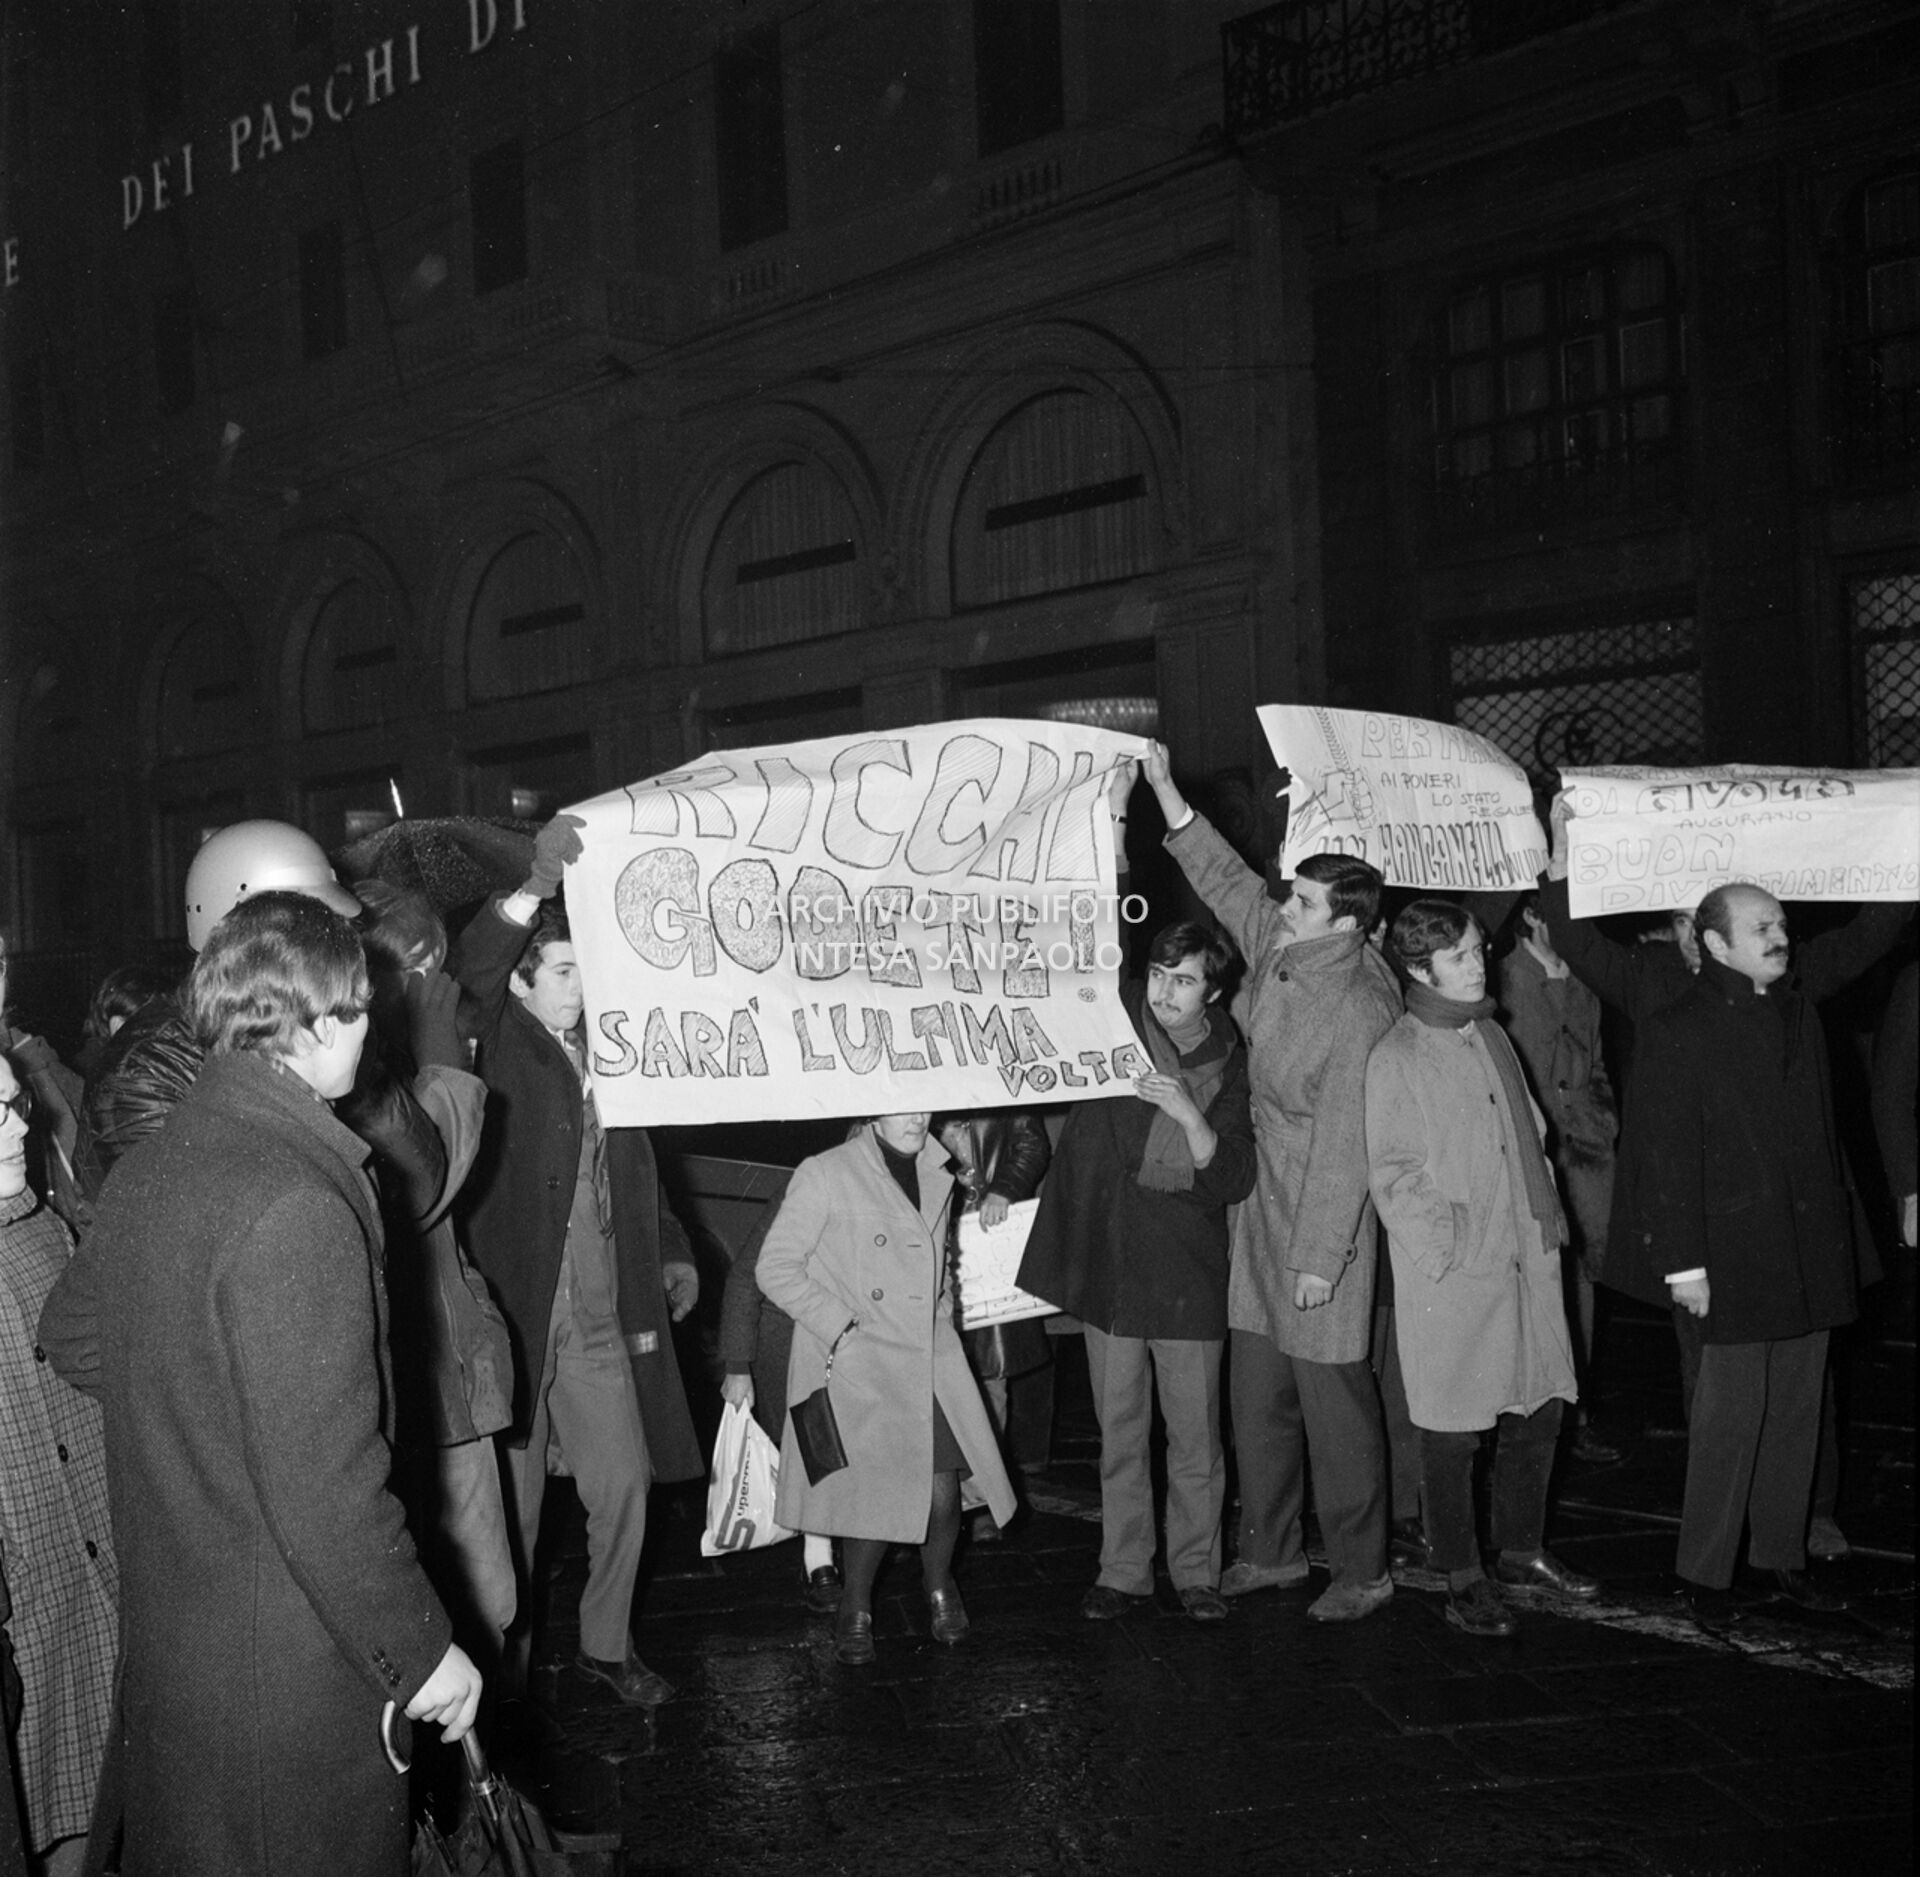 Contestatori del Movimento studentesco mostrano uno striscione con la scritta: "Ricchi godete! Sarà l'ultima volta", fuori dal Teatro alla Scala la sera dell'inaugurazione della stagione lirica 1968-1969, nel corso della quale lanciarono uova e vernice contro il pubblico in entrata